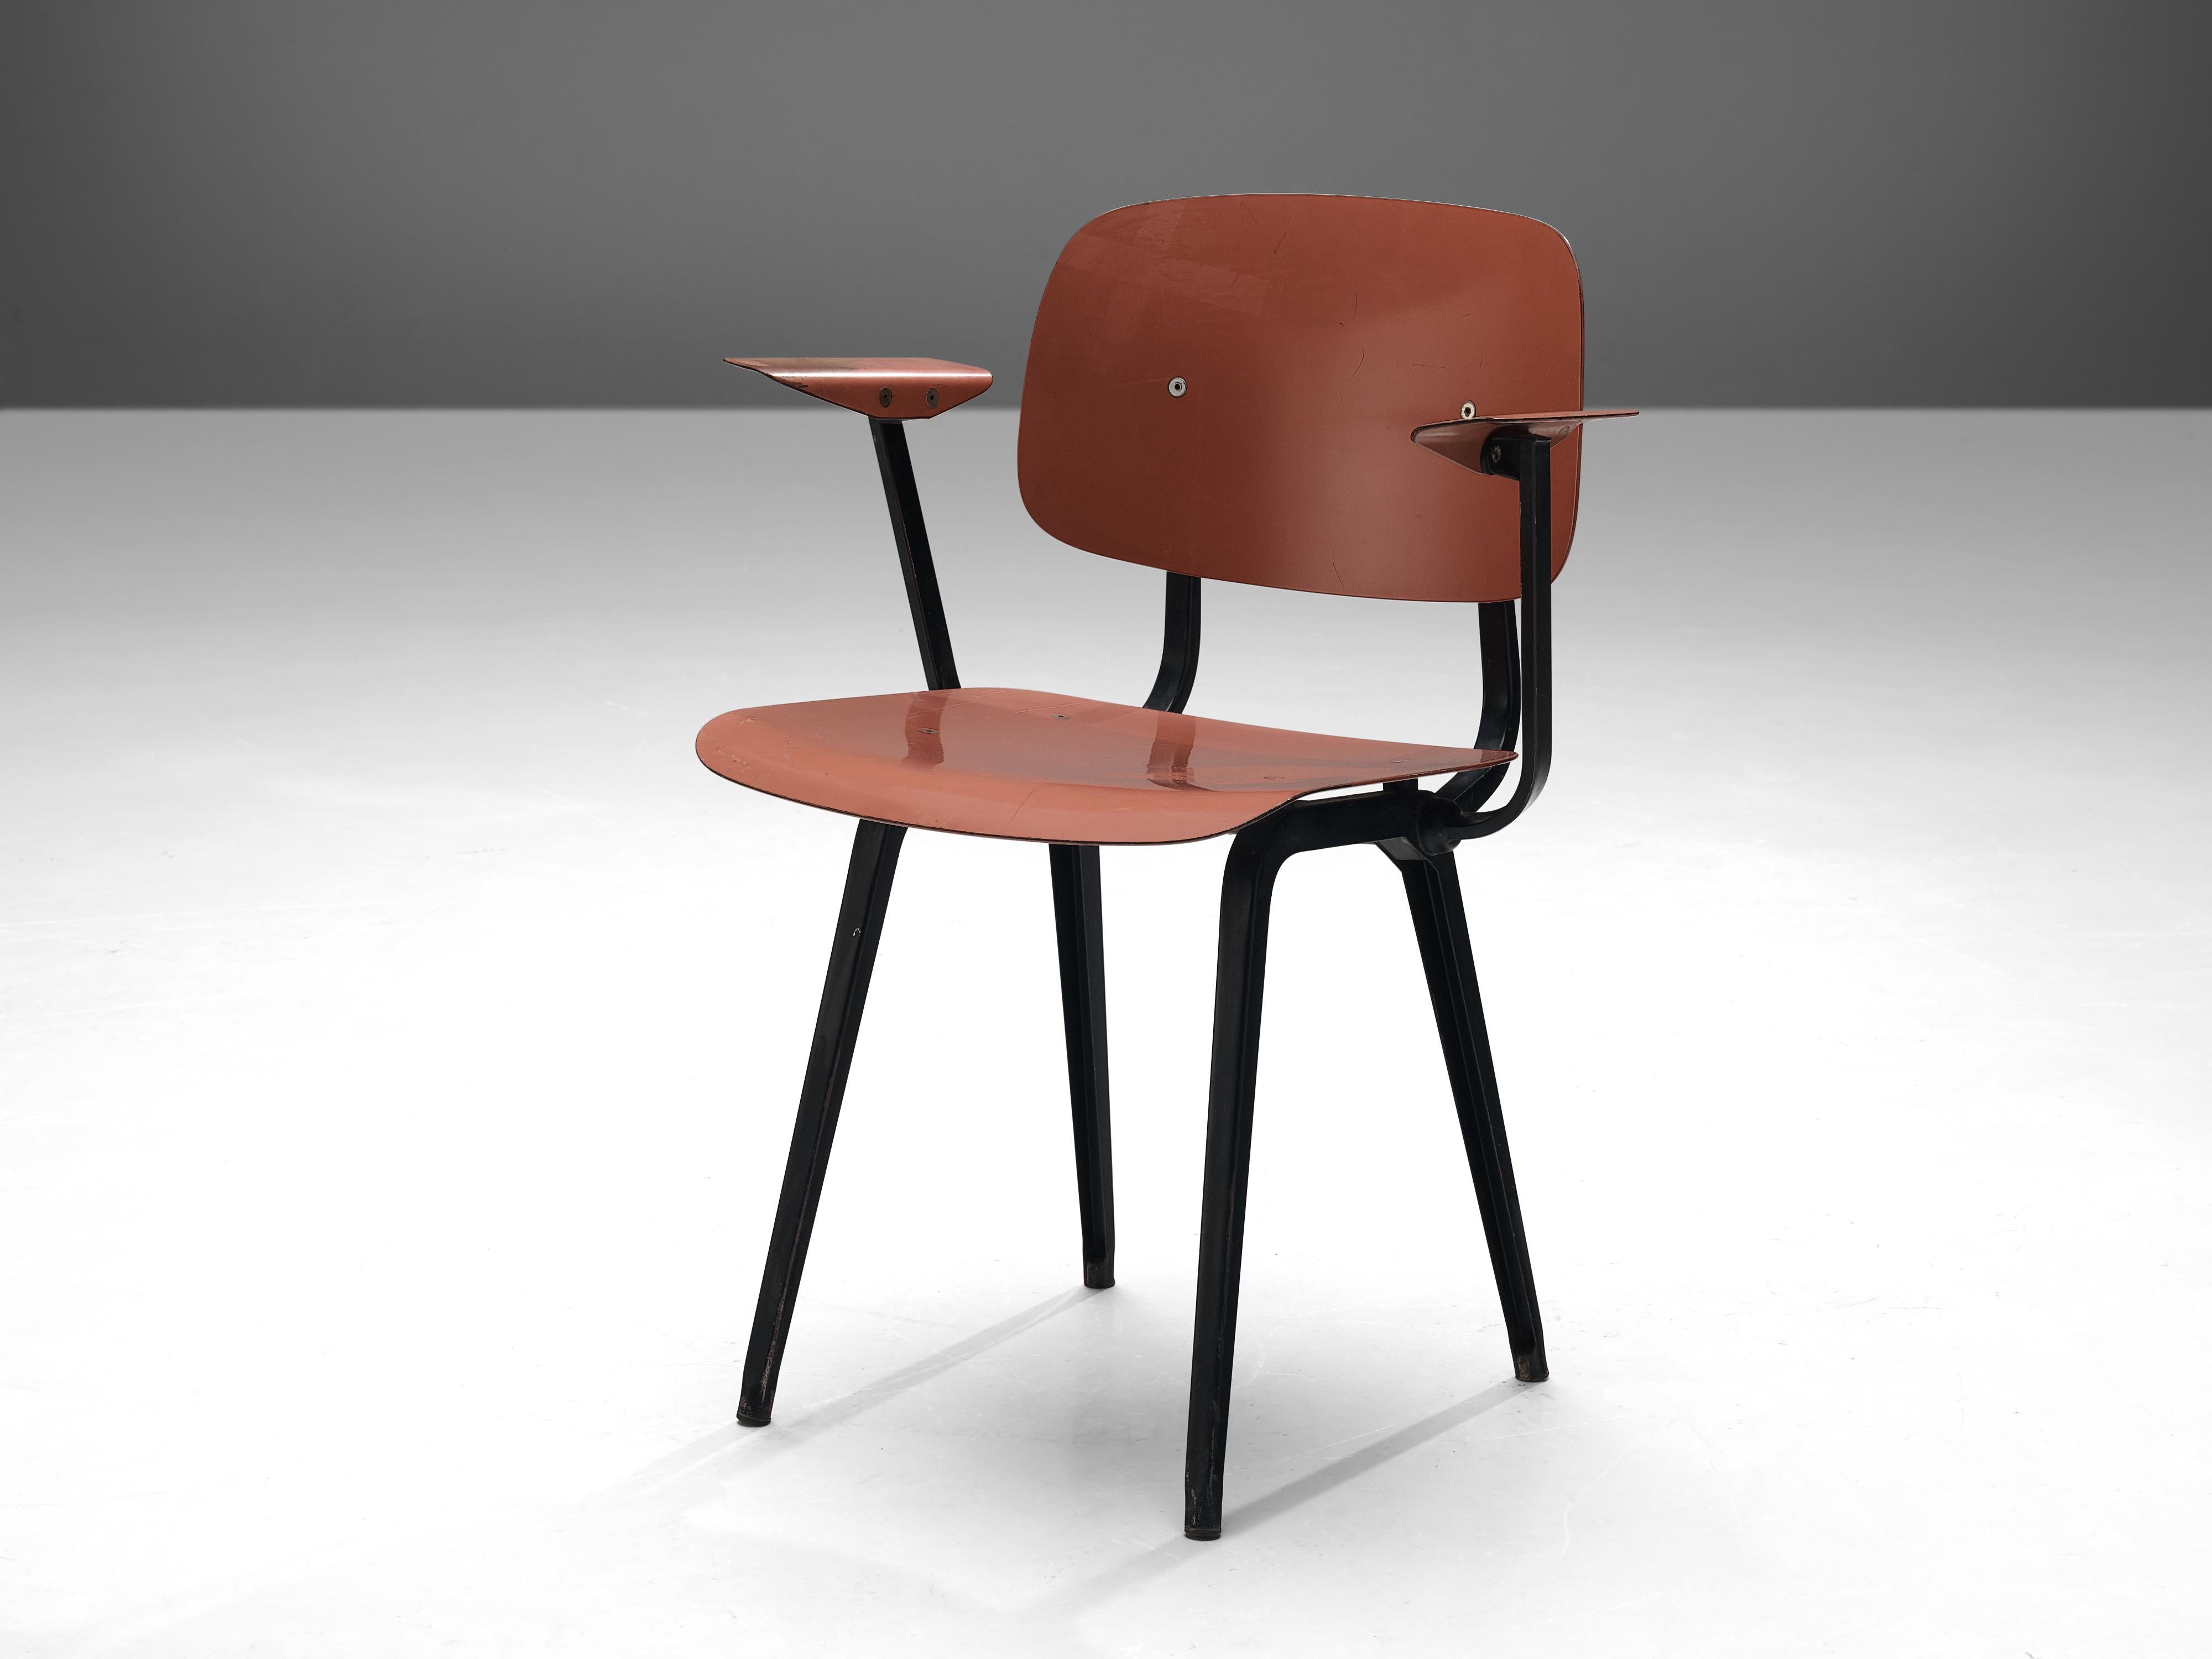 Friso Kramer pour Cirkel Ahrend, chaise, ciranol, métal, Pays-Bas, design 1953

Cette chaise nommée 